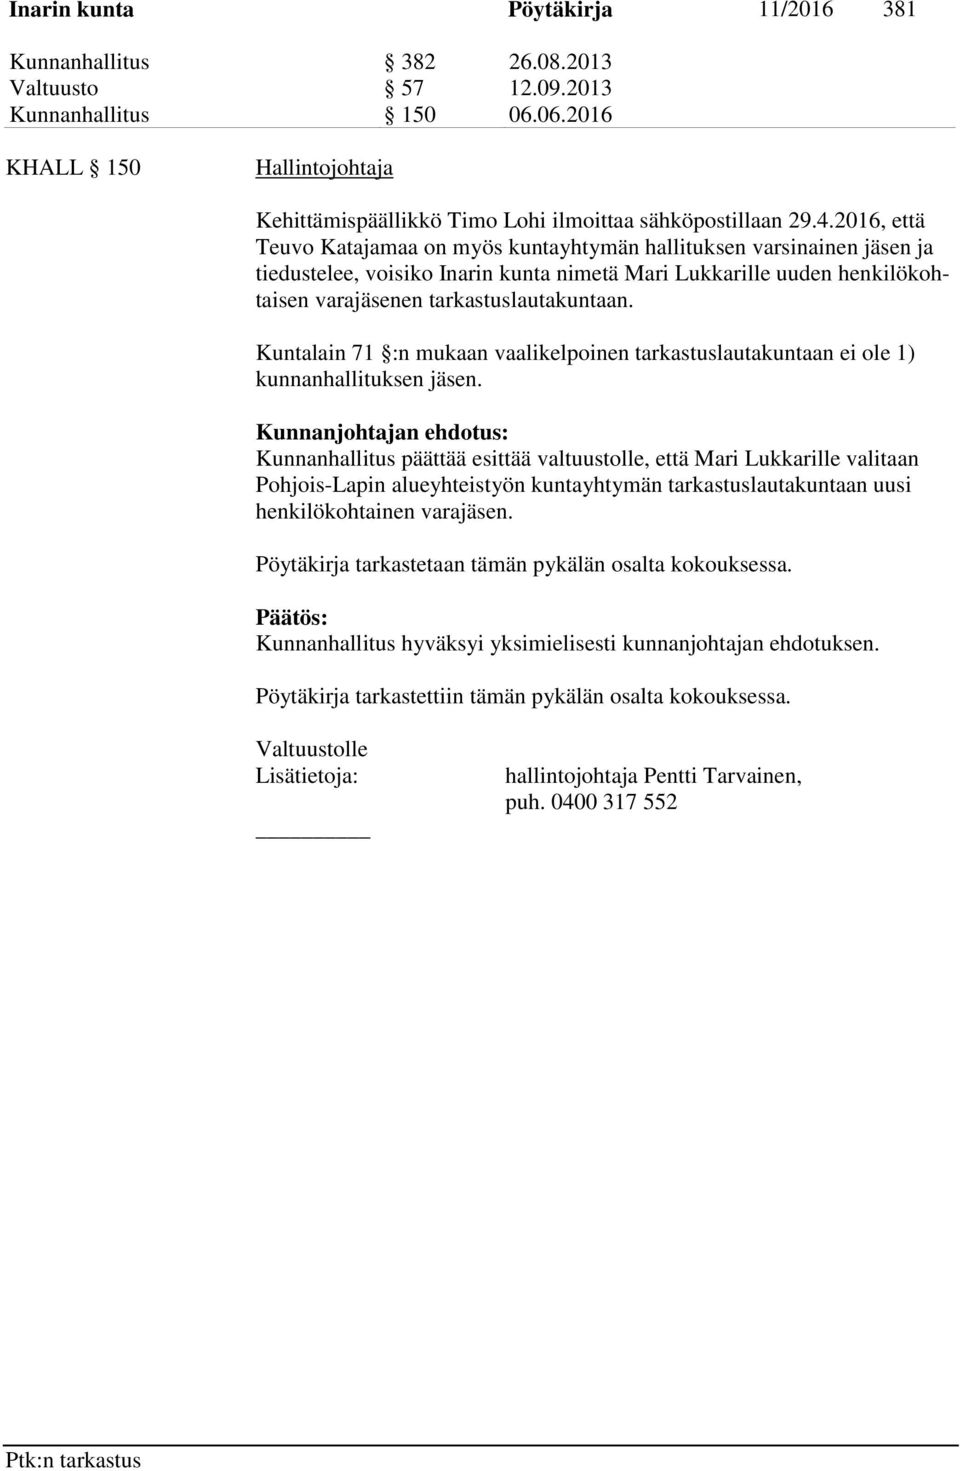 2016, että Teuvo Katajamaa on myös kuntayhtymän hallituksen varsinainen jäsen ja tiedustelee, voisiko Inarin kunta nimetä Mari Lukkarille uuden henkilökohtaisen varajäsenen tarkastuslautakuntaan.